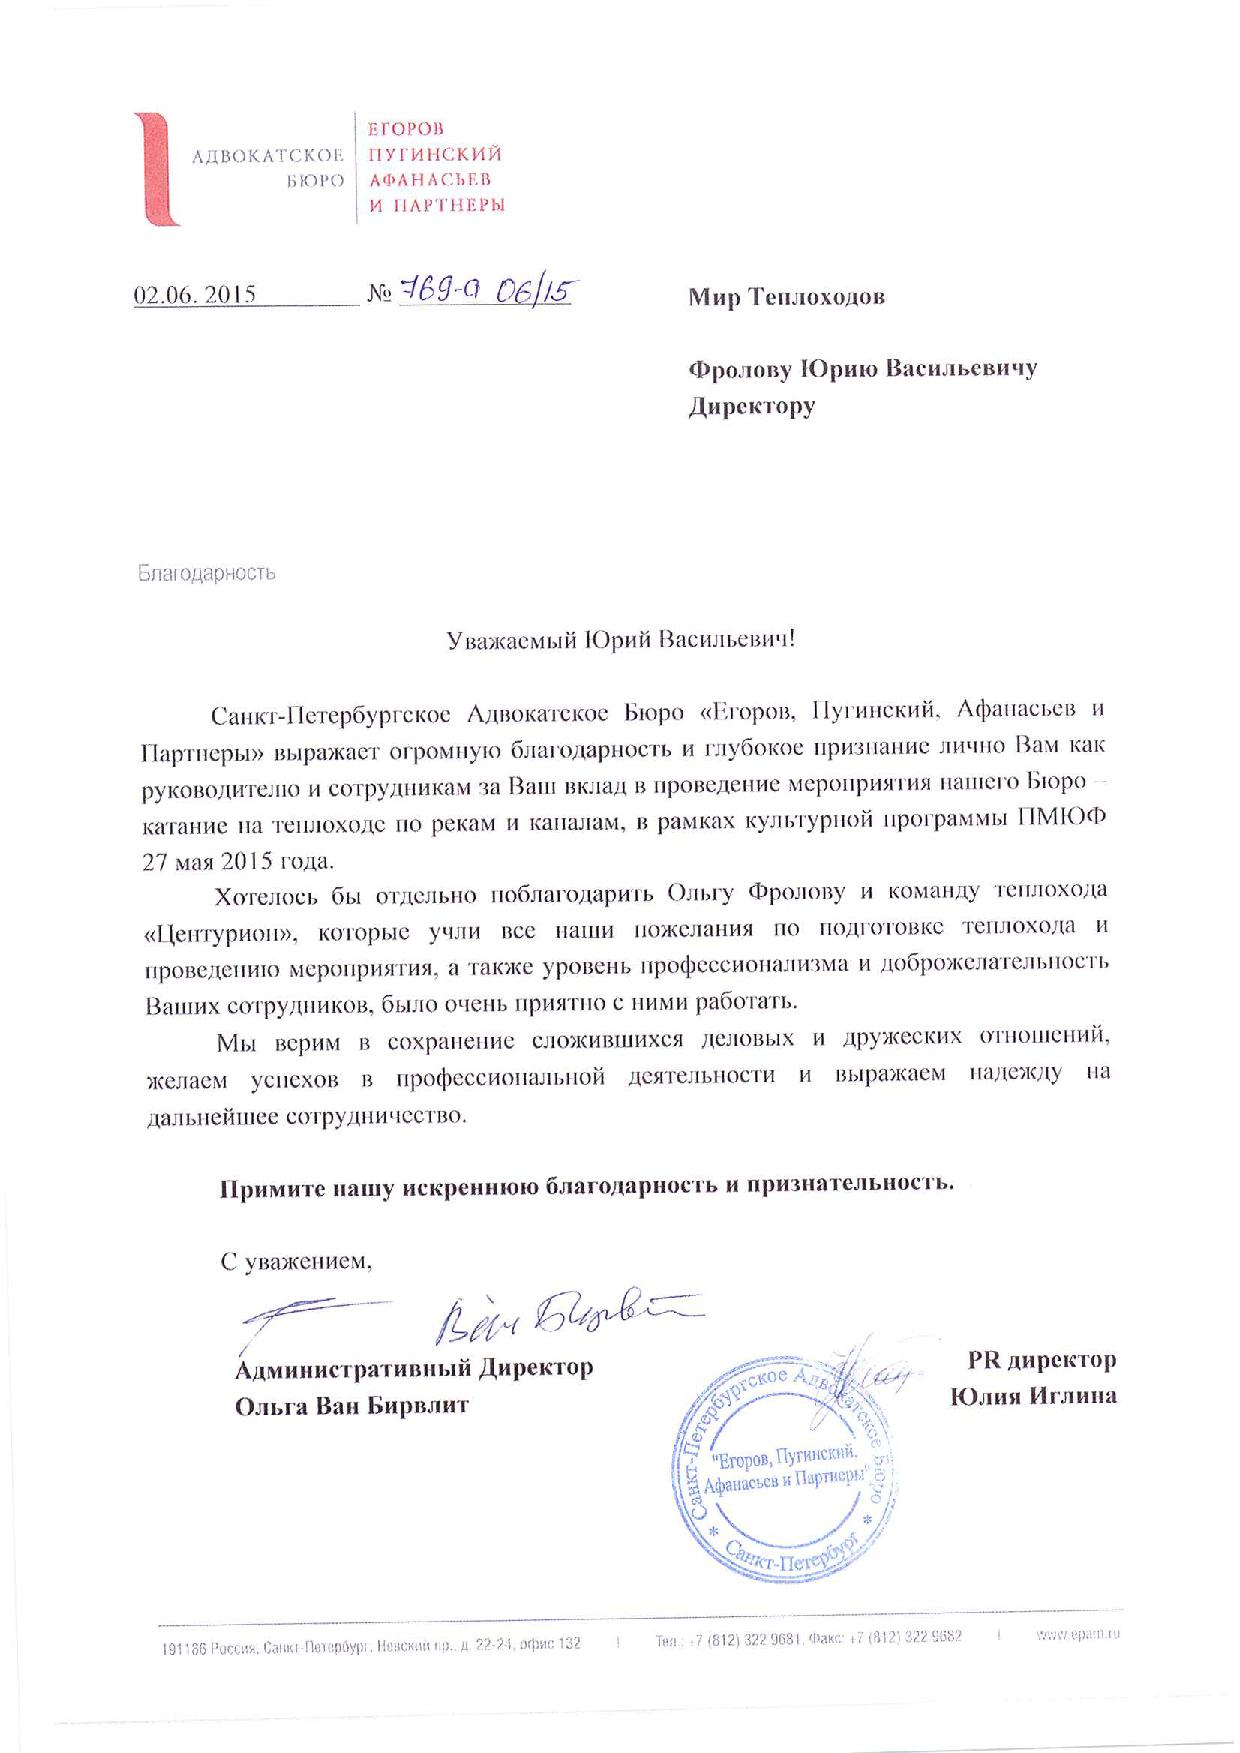 Отзыв от адвокатского бюро «Егоров, Пугинский, Афанасьев и партнеры»